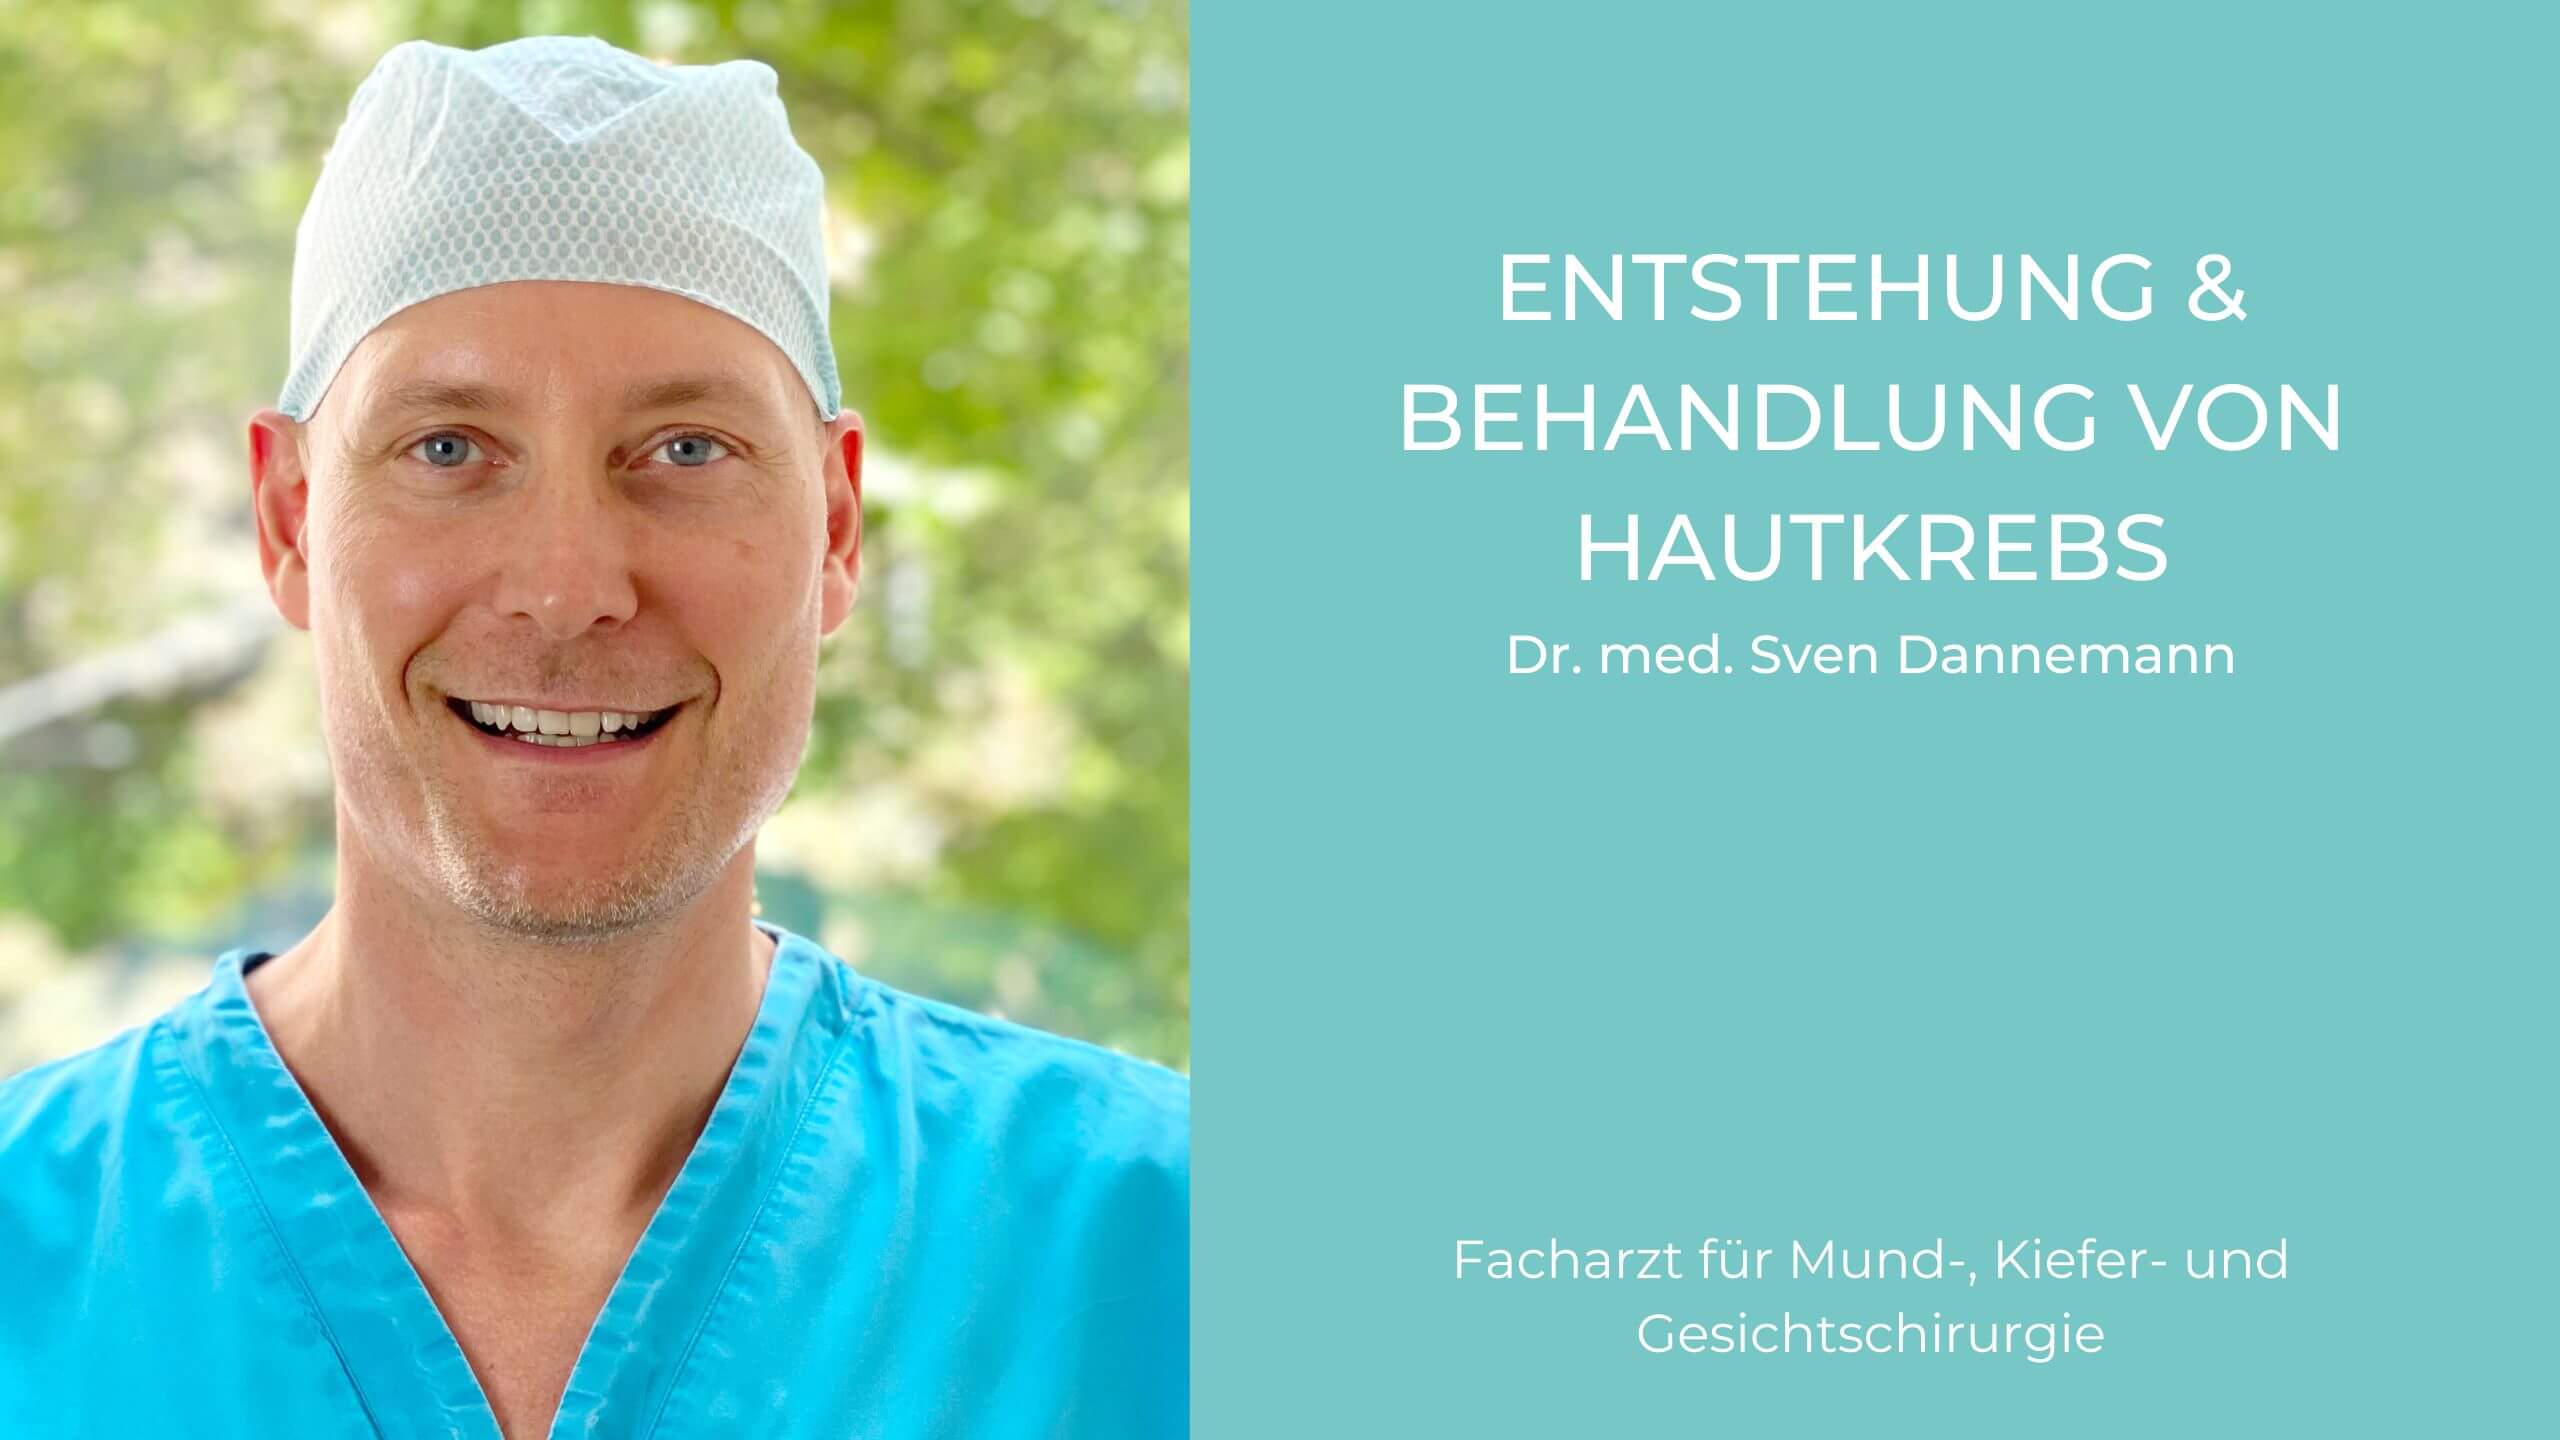 Video Hautkrebs, Mund-Kiefer-Gesichtschirurgie (MKG) in München, Dr. Dannemann